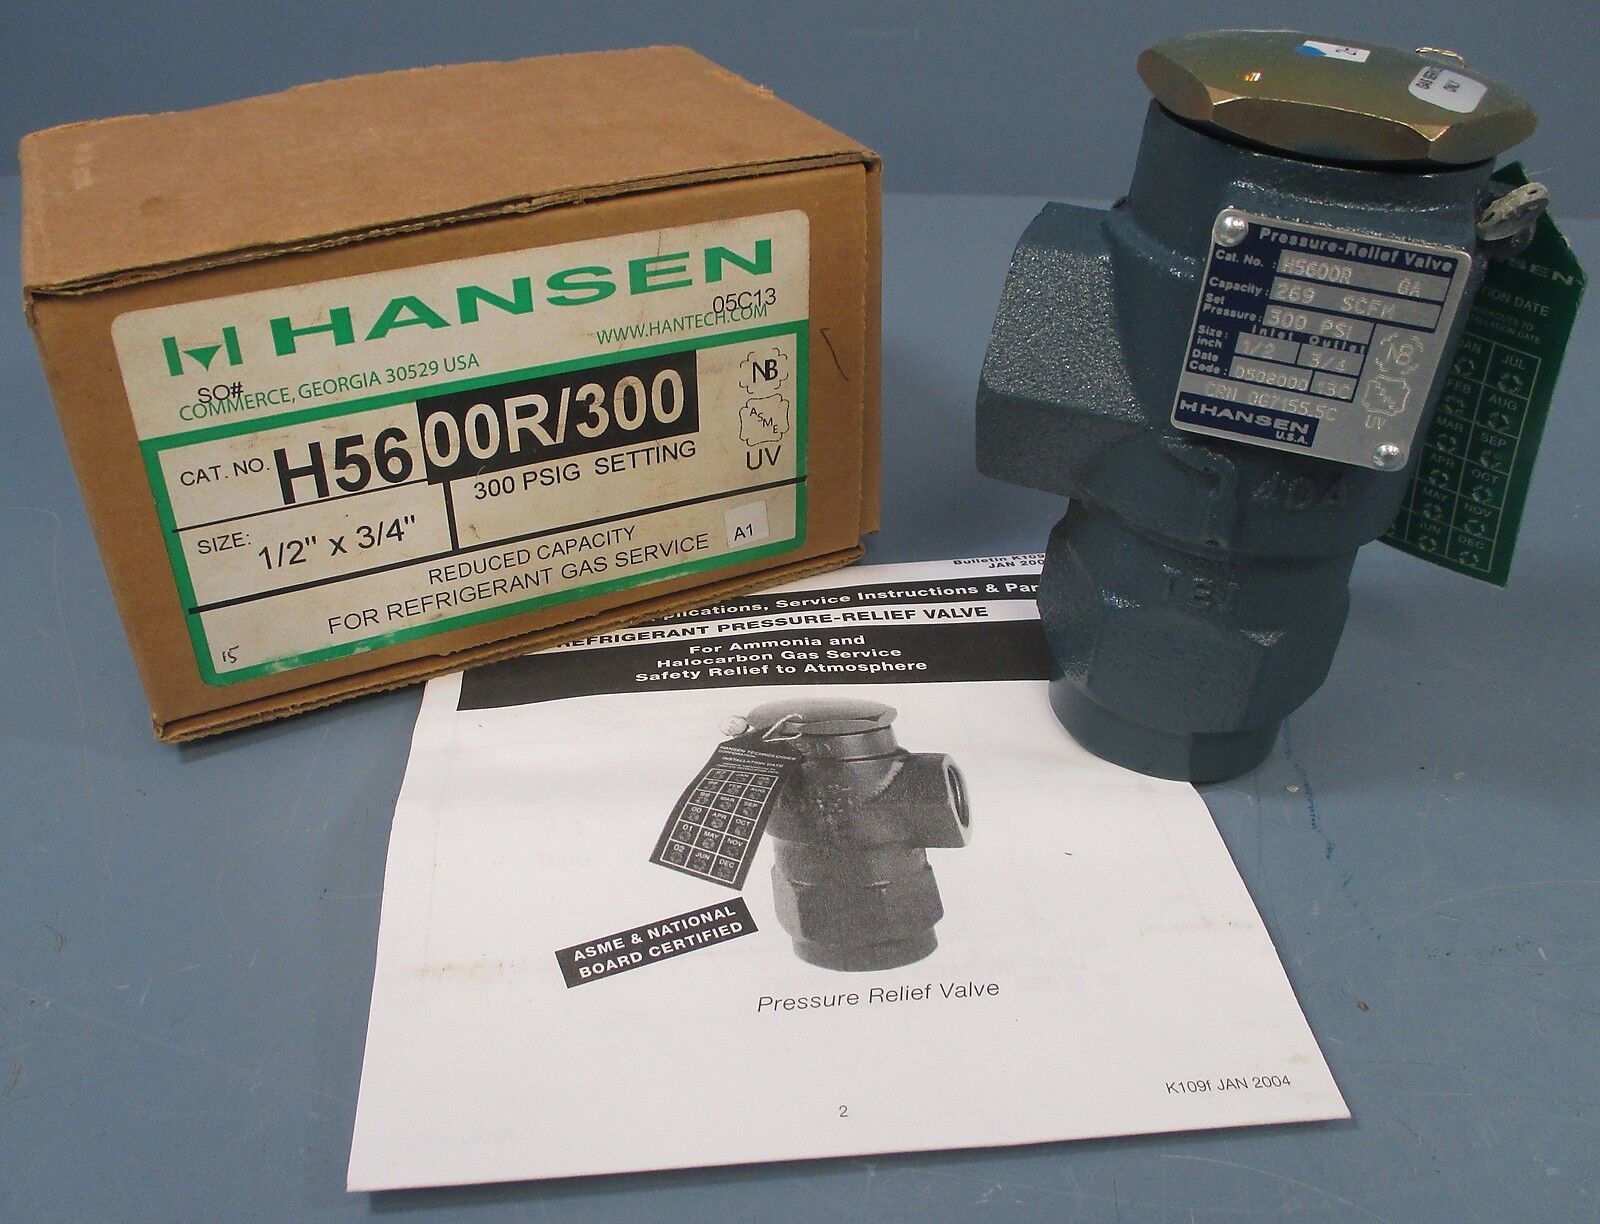 Hansen Pressure Relief Valve- for Refrigerant: H56 00R/300, 1/2